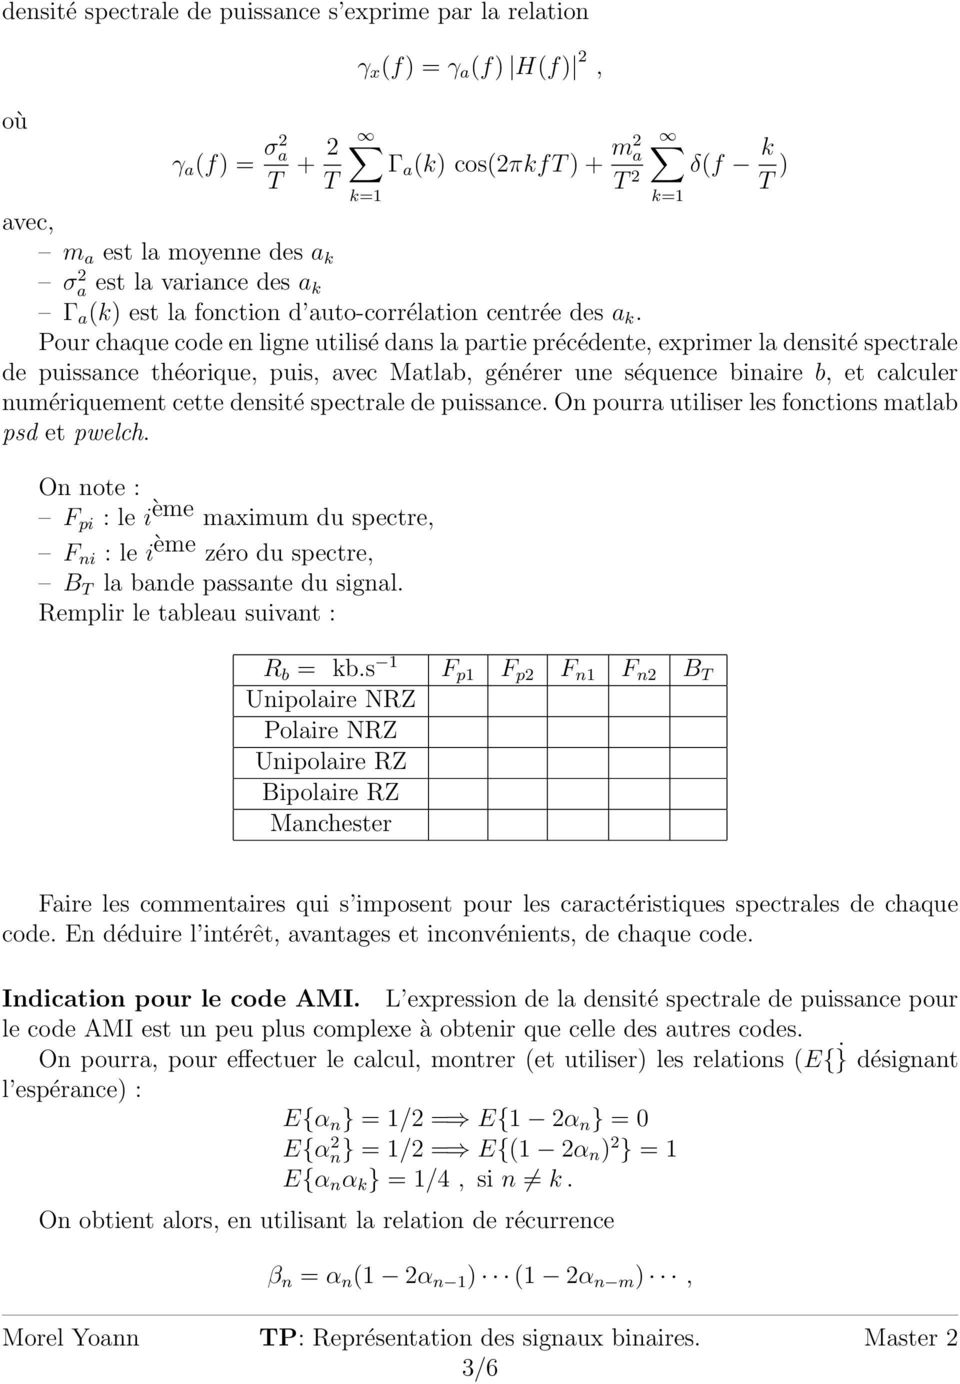 TP: Représentation des signaux binaires. 1 Simulation d un message binaire  - Codage en ligne - PDF Téléchargement Gratuit